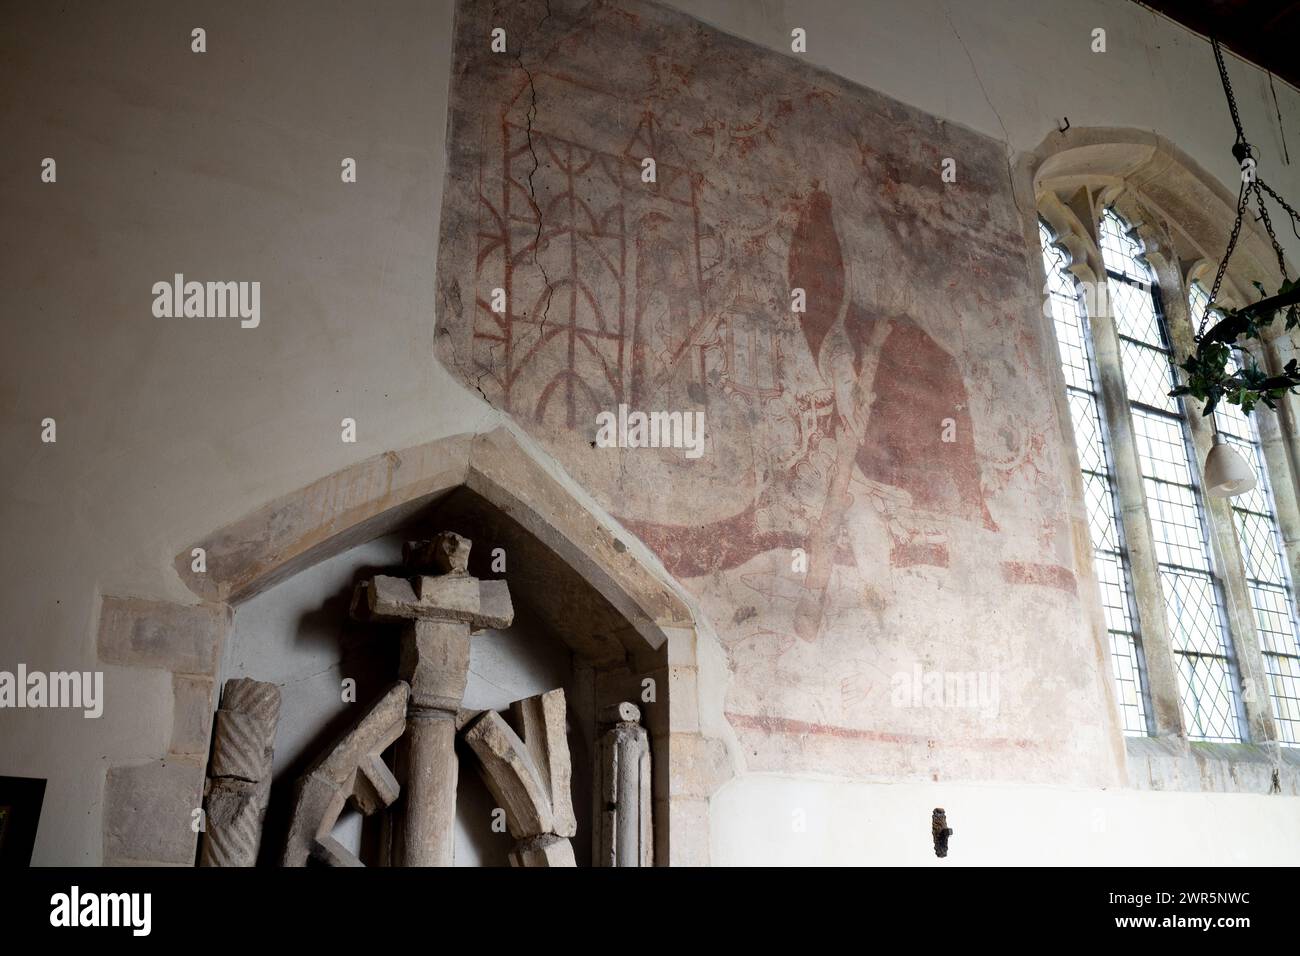 Peinture murale médiévale, équipée Église Peter`s, Molesworth, Cambridgeshire, Angleterre, Royaume-Uni Banque D'Images